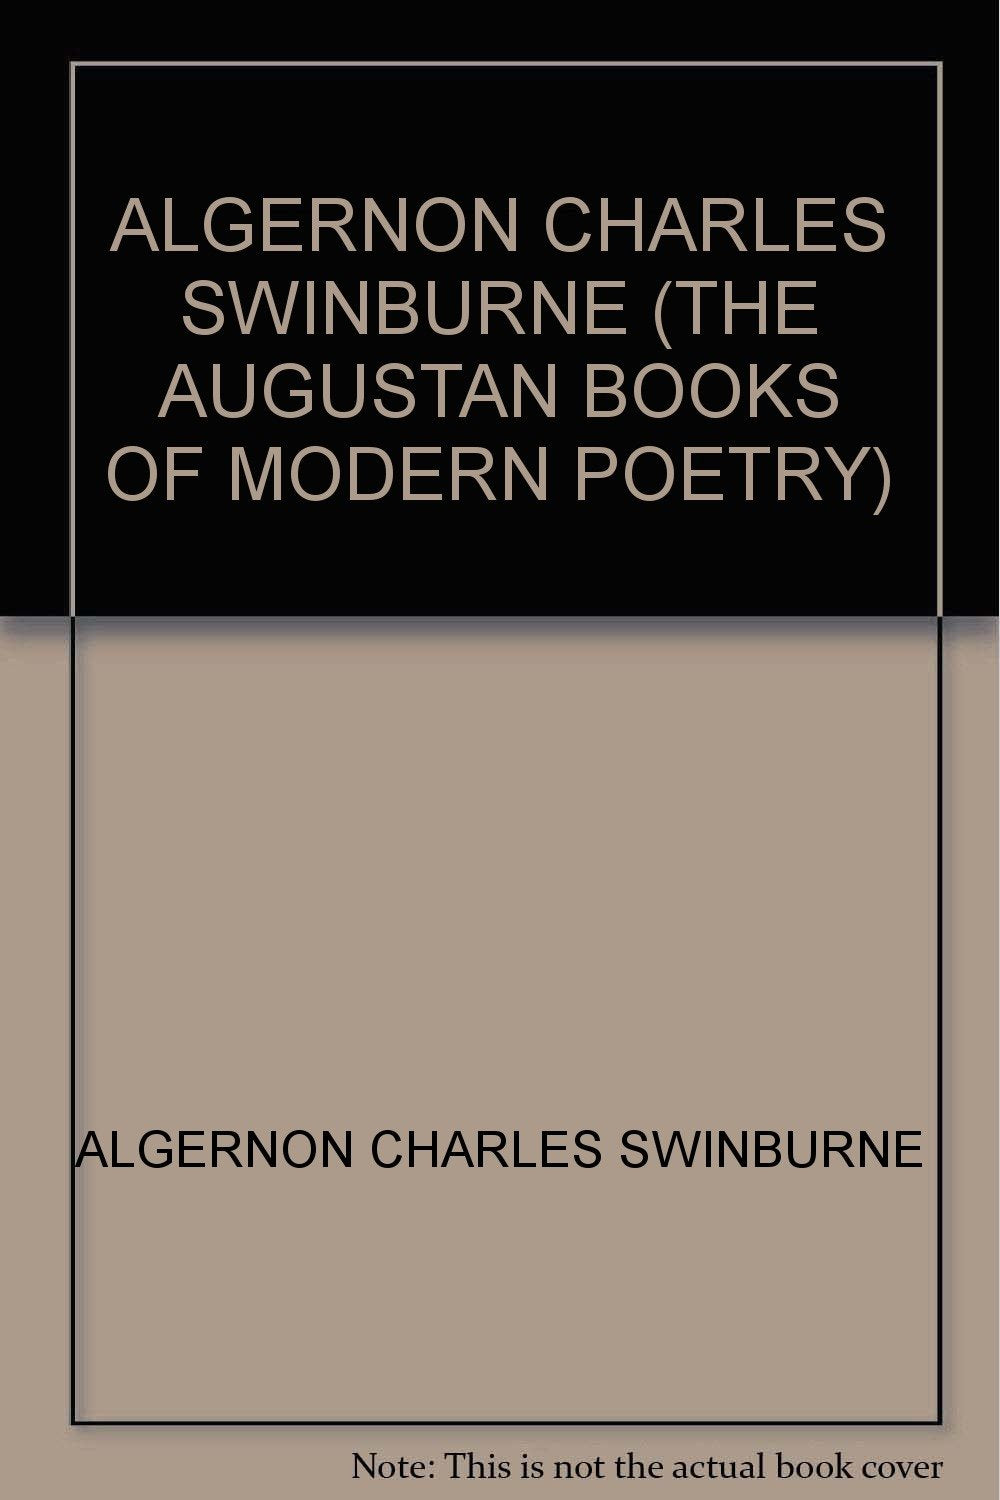 ALGERNON CHARLES SWINBURNE (THE AUGUSTAN BOOKS OF MODERN POETRY) [Paperback] ALGERNON CHARLES SWINBURNE